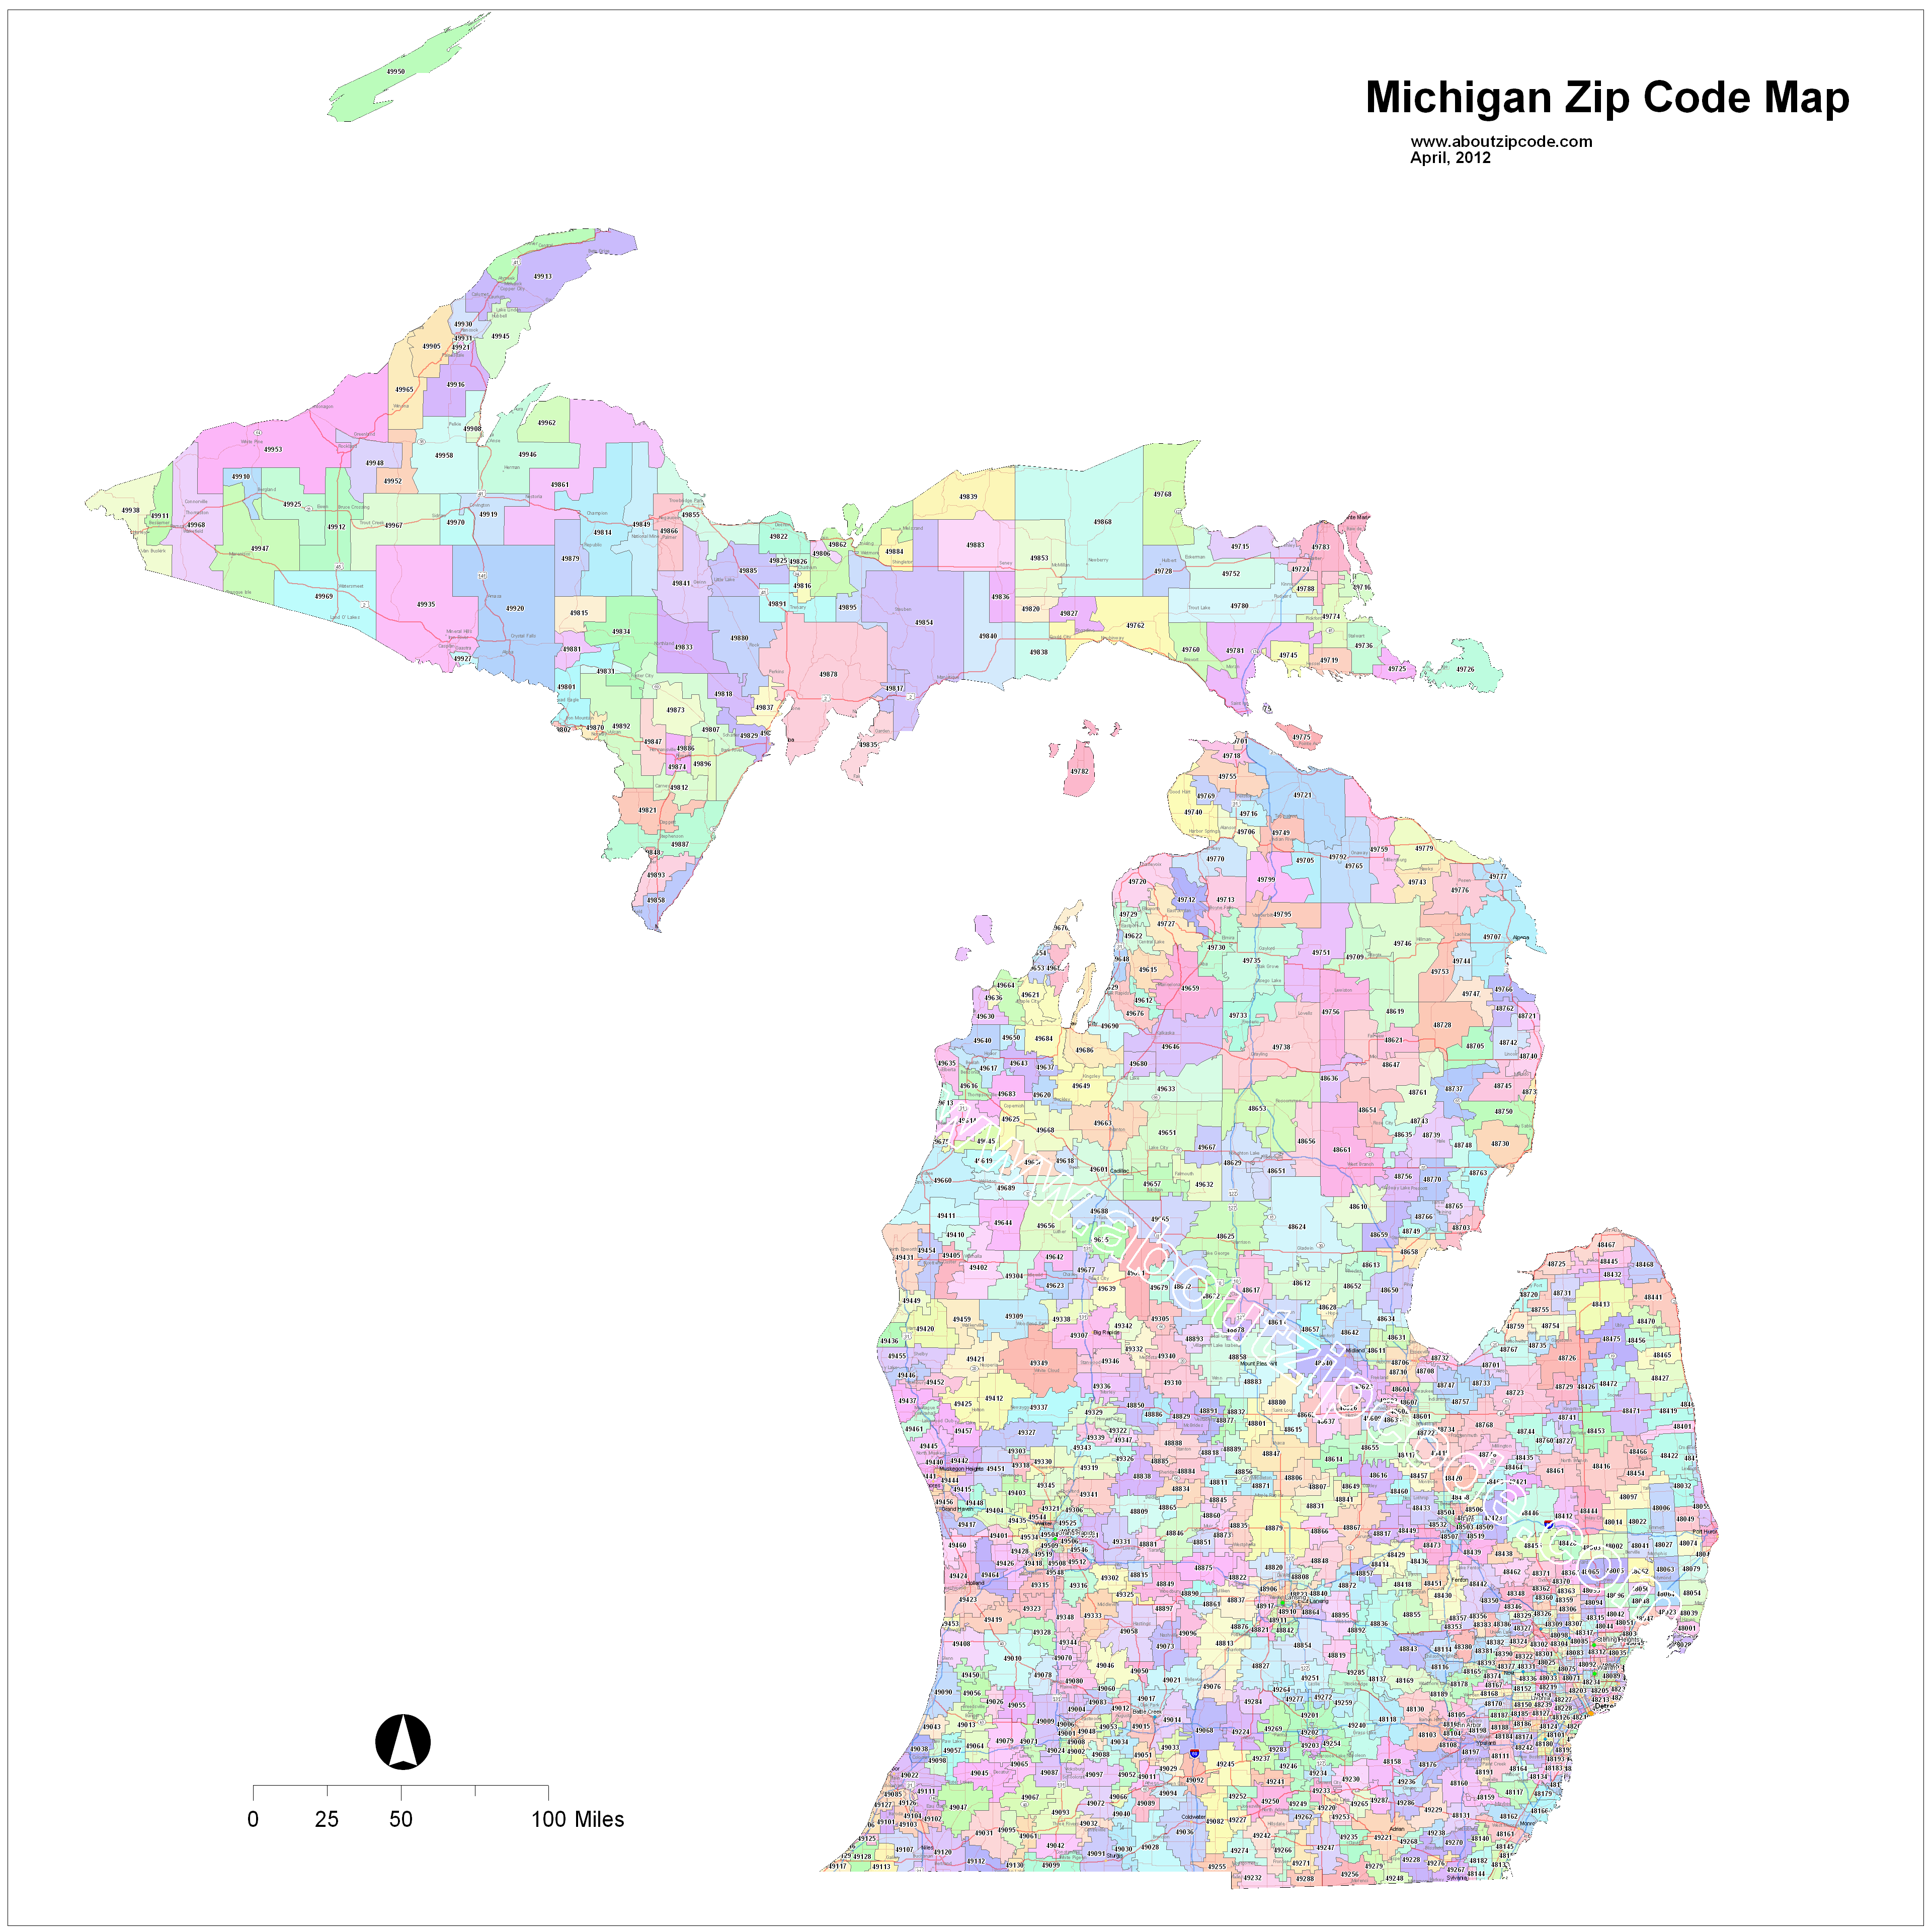 zip codes in michigan map Michigan Zip Code Maps Free Michigan Zip Code Maps zip codes in michigan map